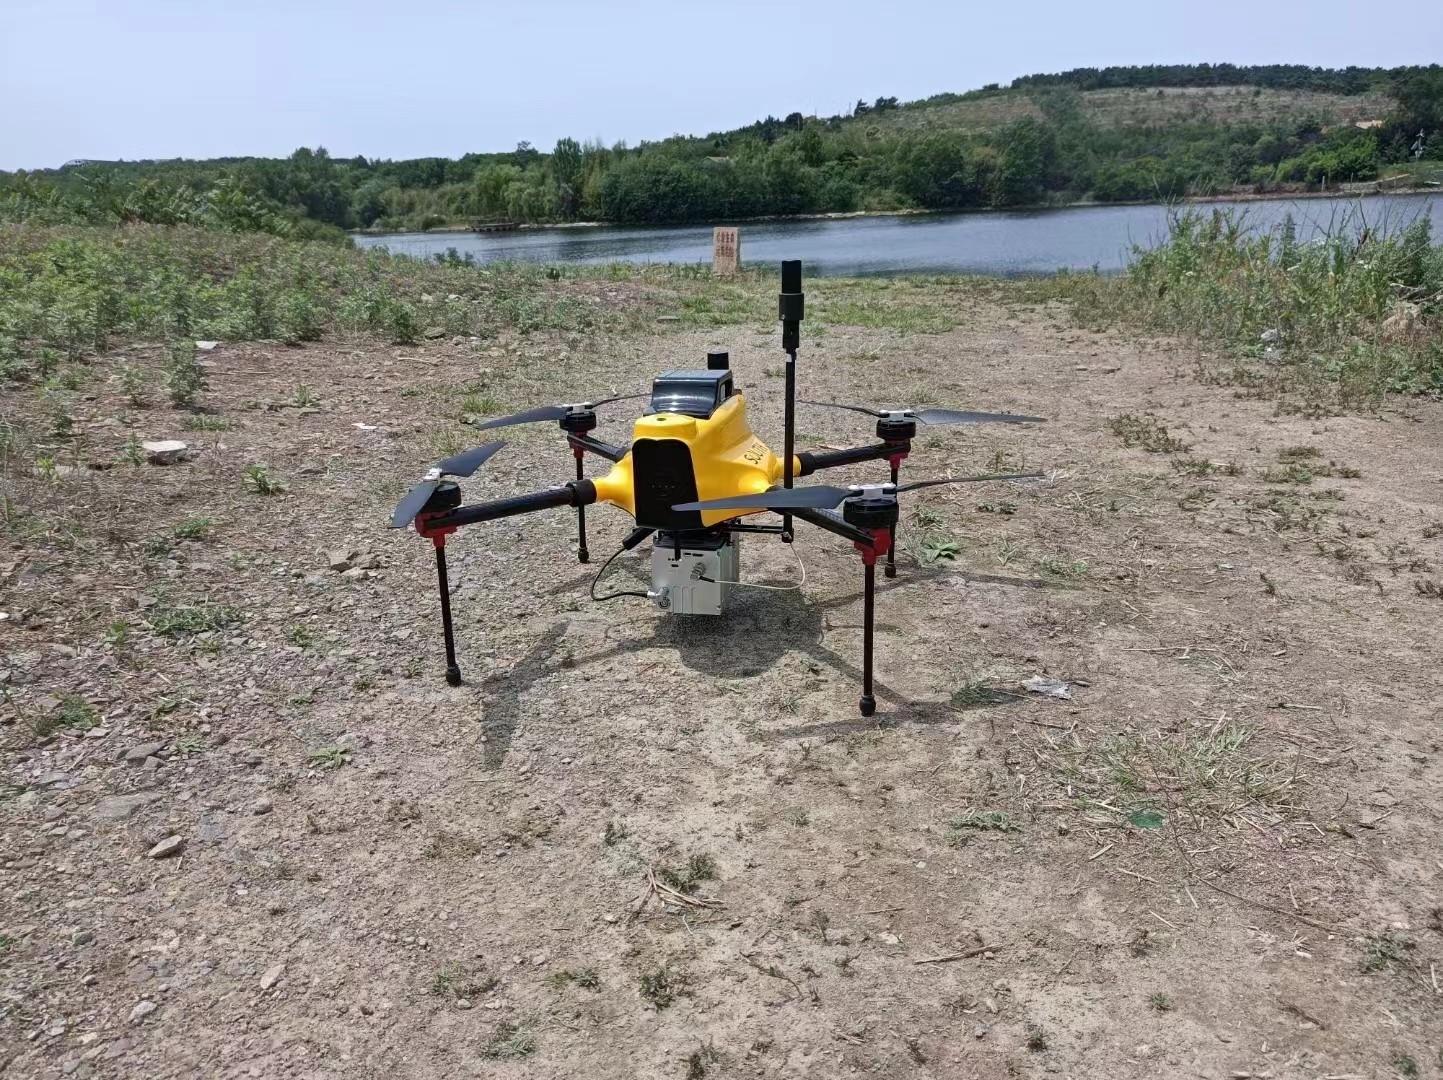 τελευταία εταιρεία περί UAV LiDAR Scanning System Geosun GS-100C+ Application for Reservoir